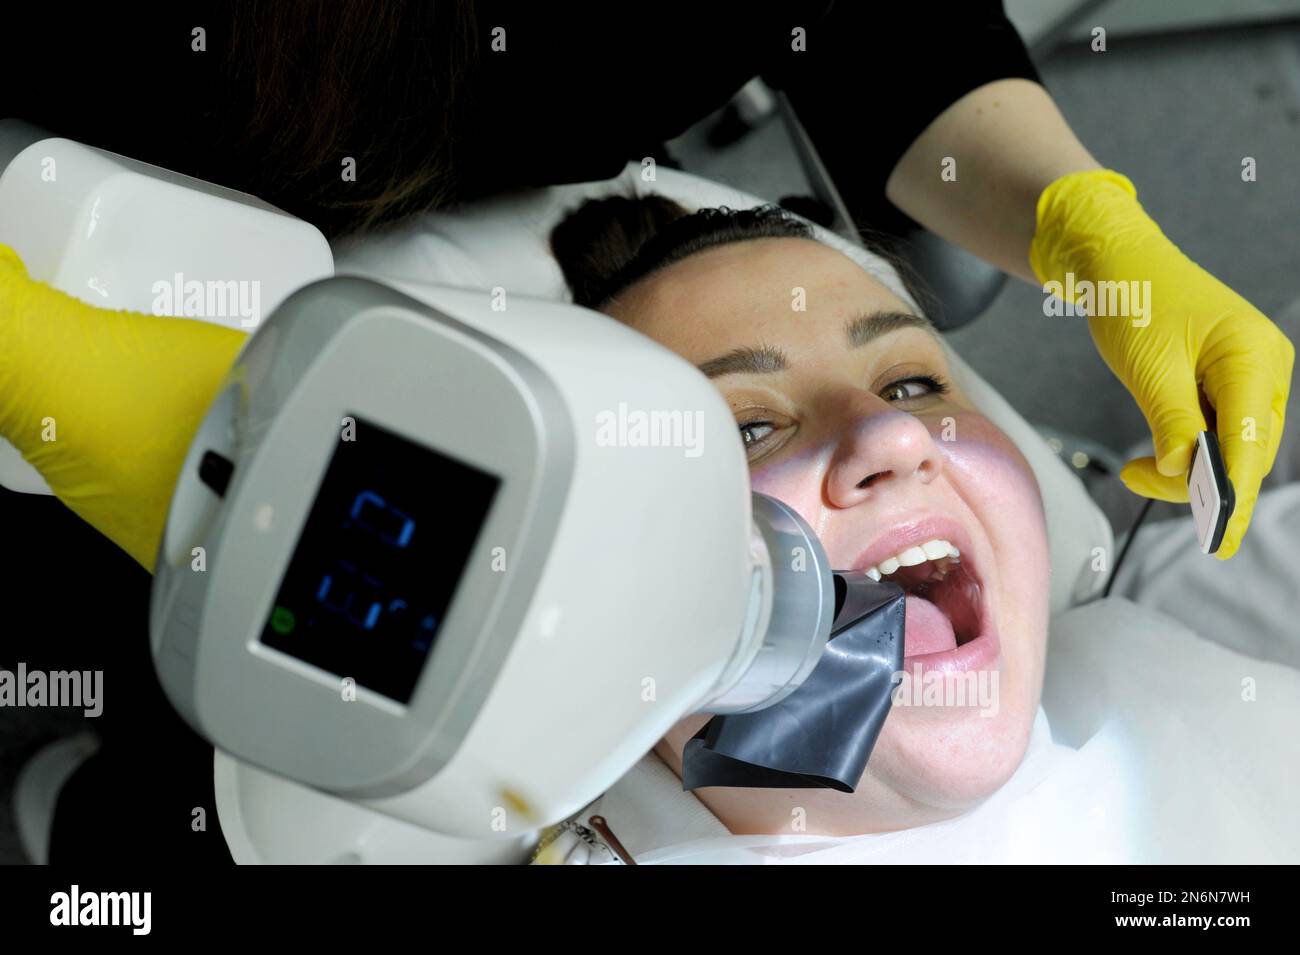 Neueste Technologie in der Zahnklinik mit Hilfe des neuen Röntgenscanners Frau wird aufgenommen Bild füllende Kanäle Frau lächelt hübsch auf Arzt gelbe Handschuhe und Stockfoto